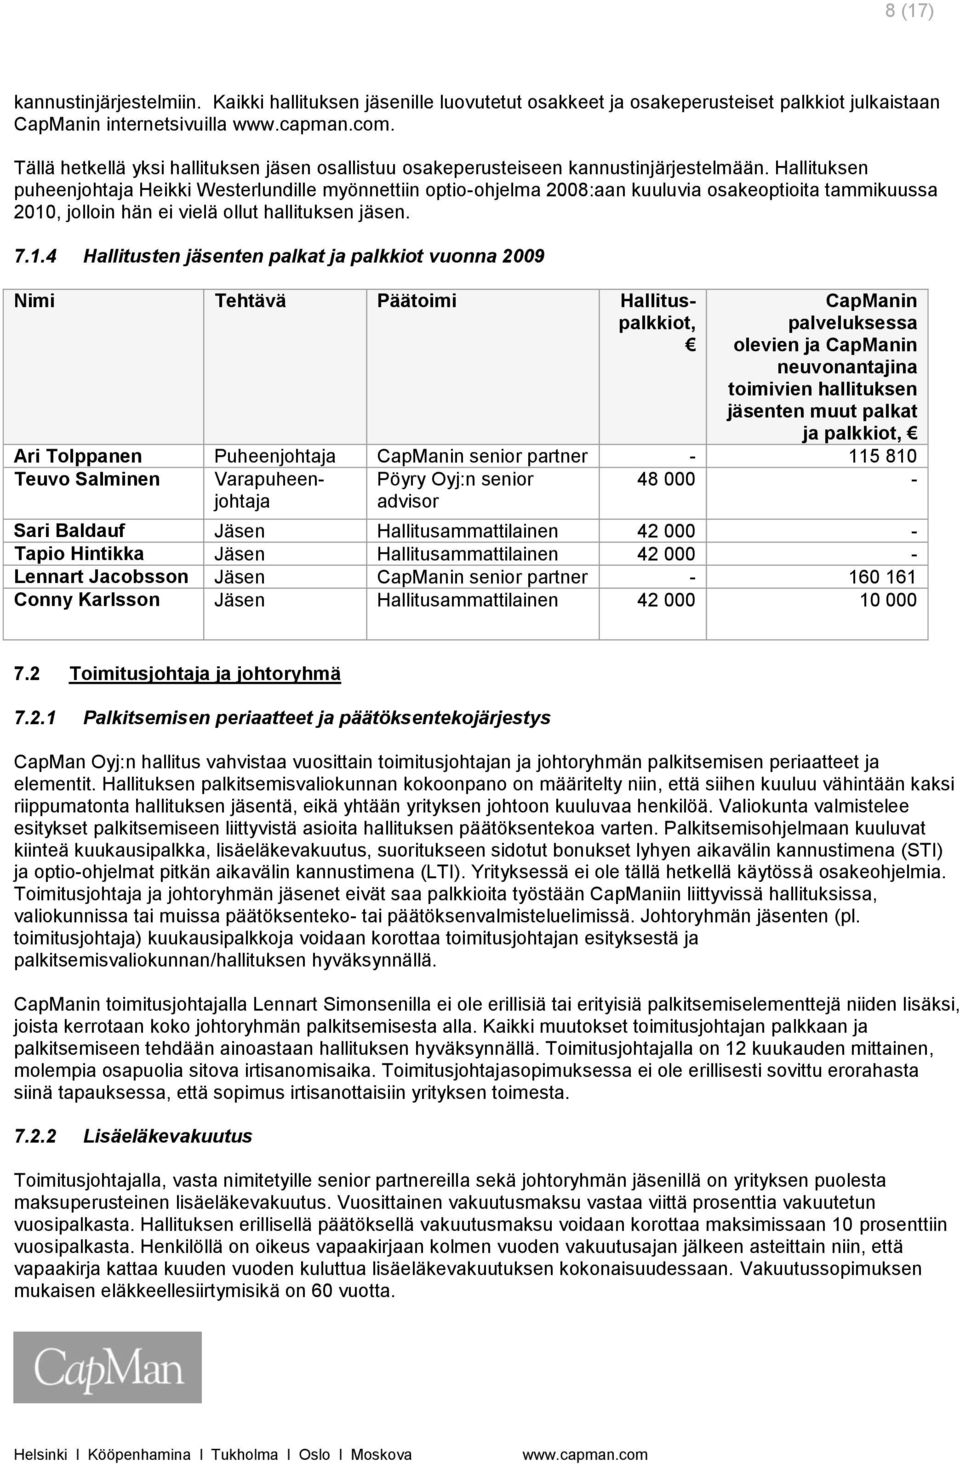 Hallituksen puheenjohtaja Heikki Westerlundille myönnettiin optio-ohjelma 2008:aan kuuluvia osakeoptioita tammikuussa 2010